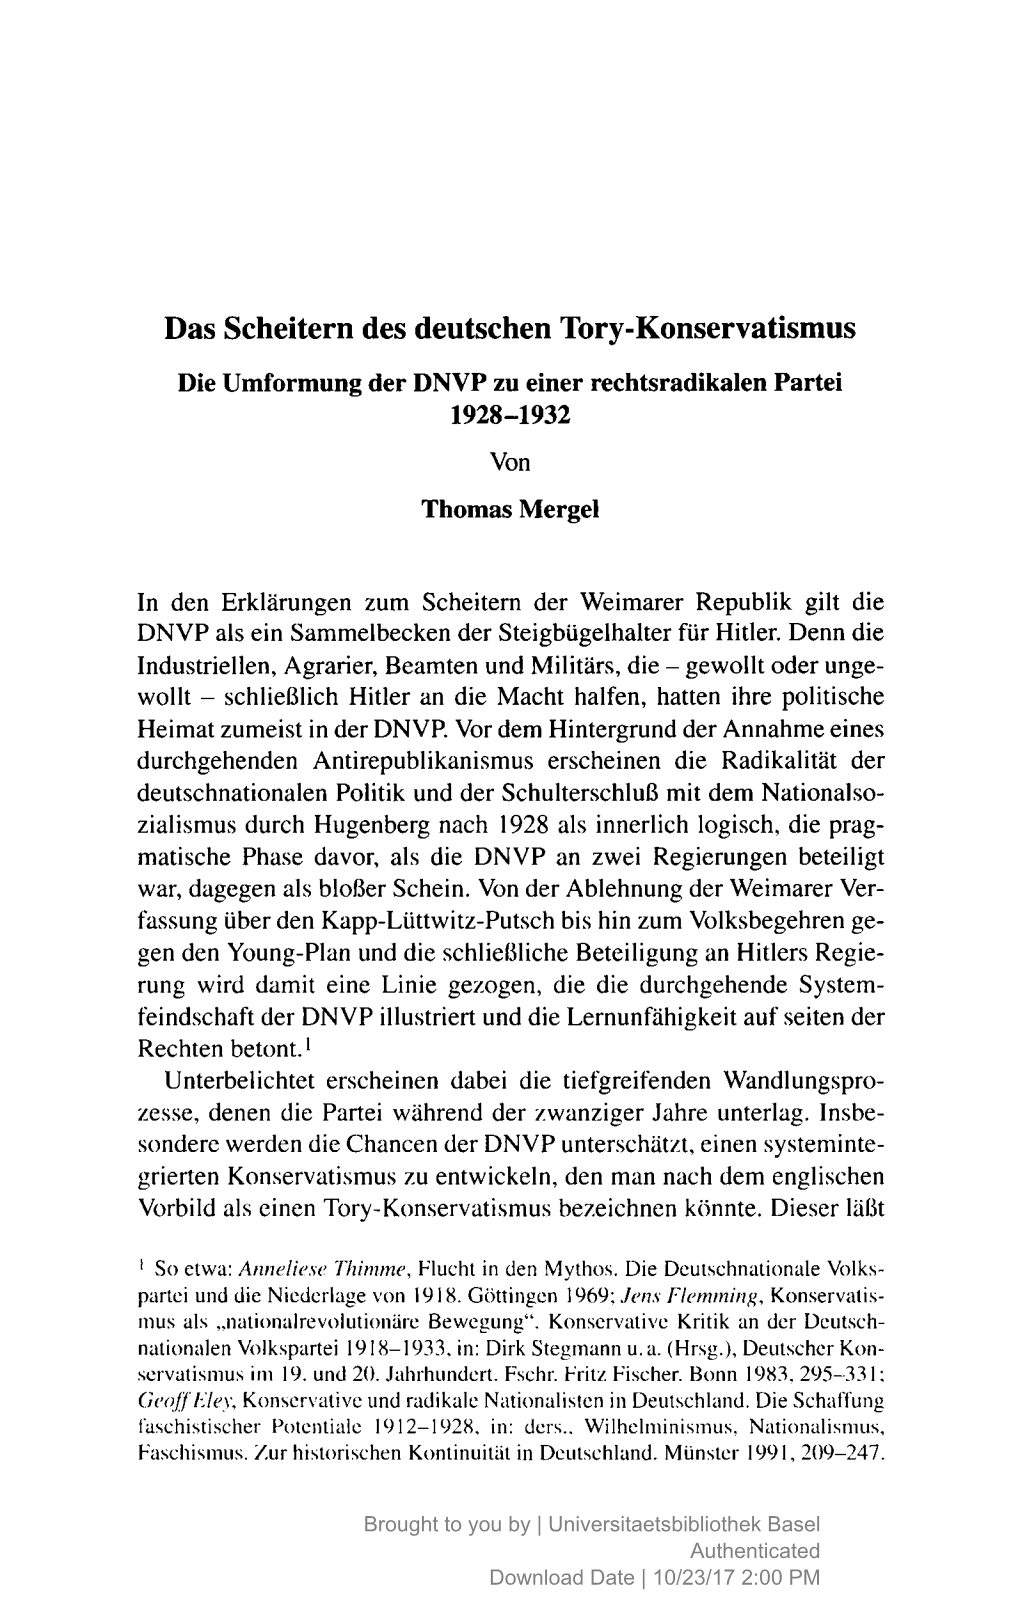 Das Scheitern Des Deutschen Tory-Konservatismus Die Umformung Der DNVP Zu Einer Rechtsradikalen Partei 1928-1932